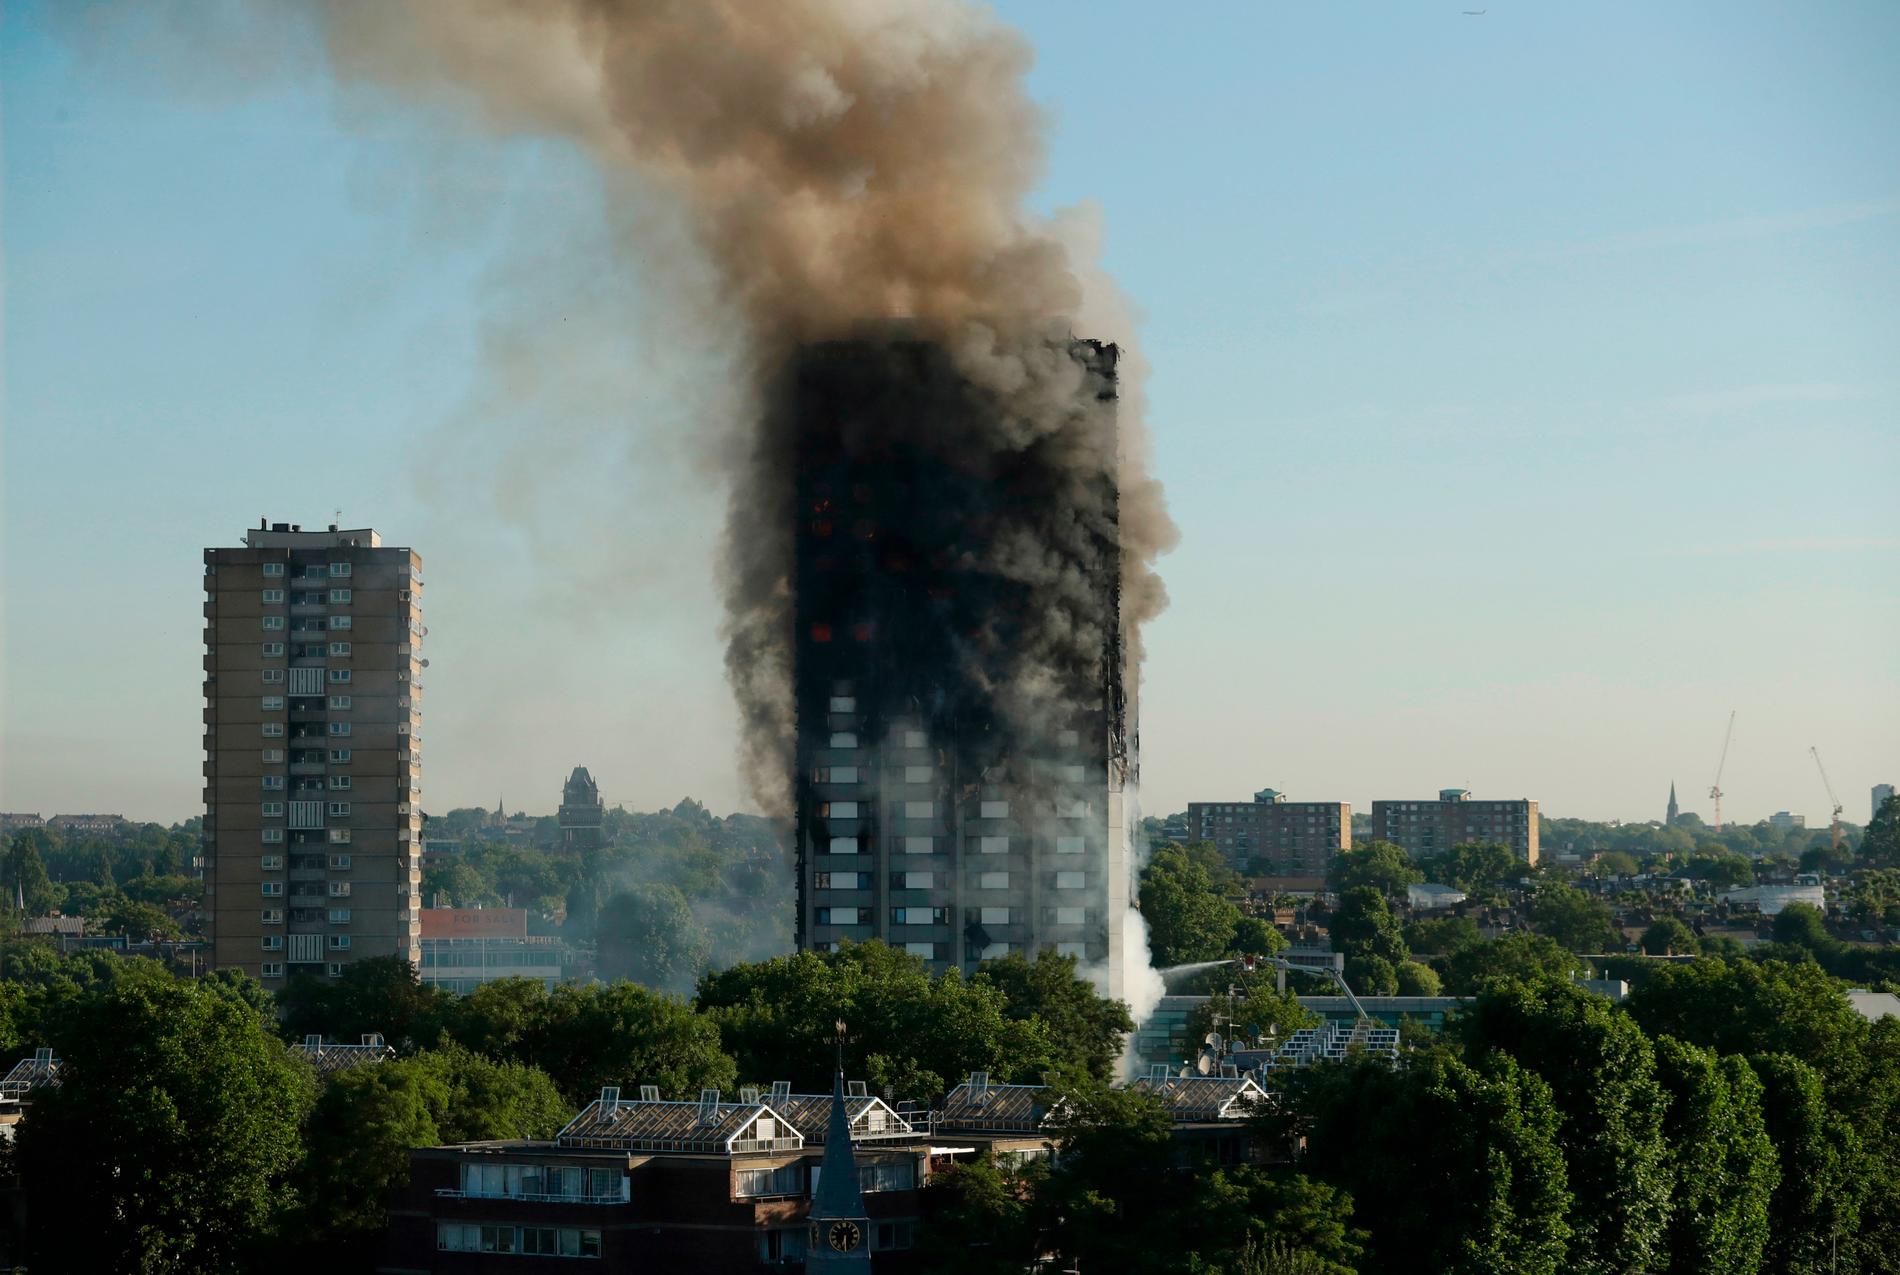 Många blev oroliga efter den katastrofala branden i ett höghus i Kensington i London i juni 2017 då 72 människor dog. Då var det cellplats på fasaden som brann. Arkivbild.